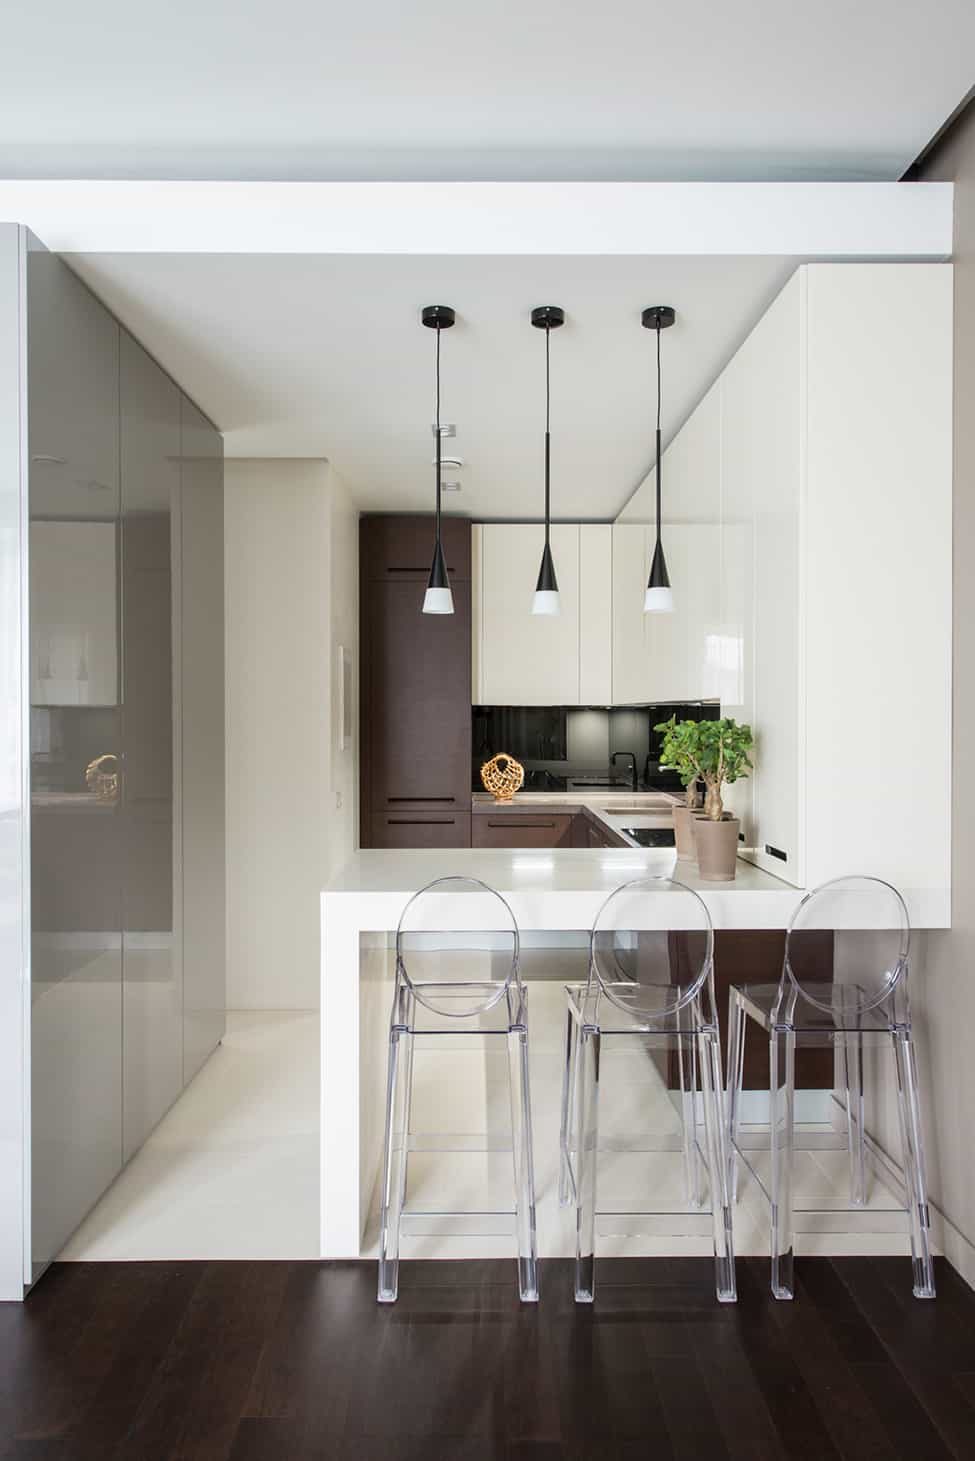 دکوراسیون آشپزخانه کوچک و مدرن با کابینت های سفید و قهوه ای که در آن رویکرد سبک مدرن و مینیمال به کار رفته است